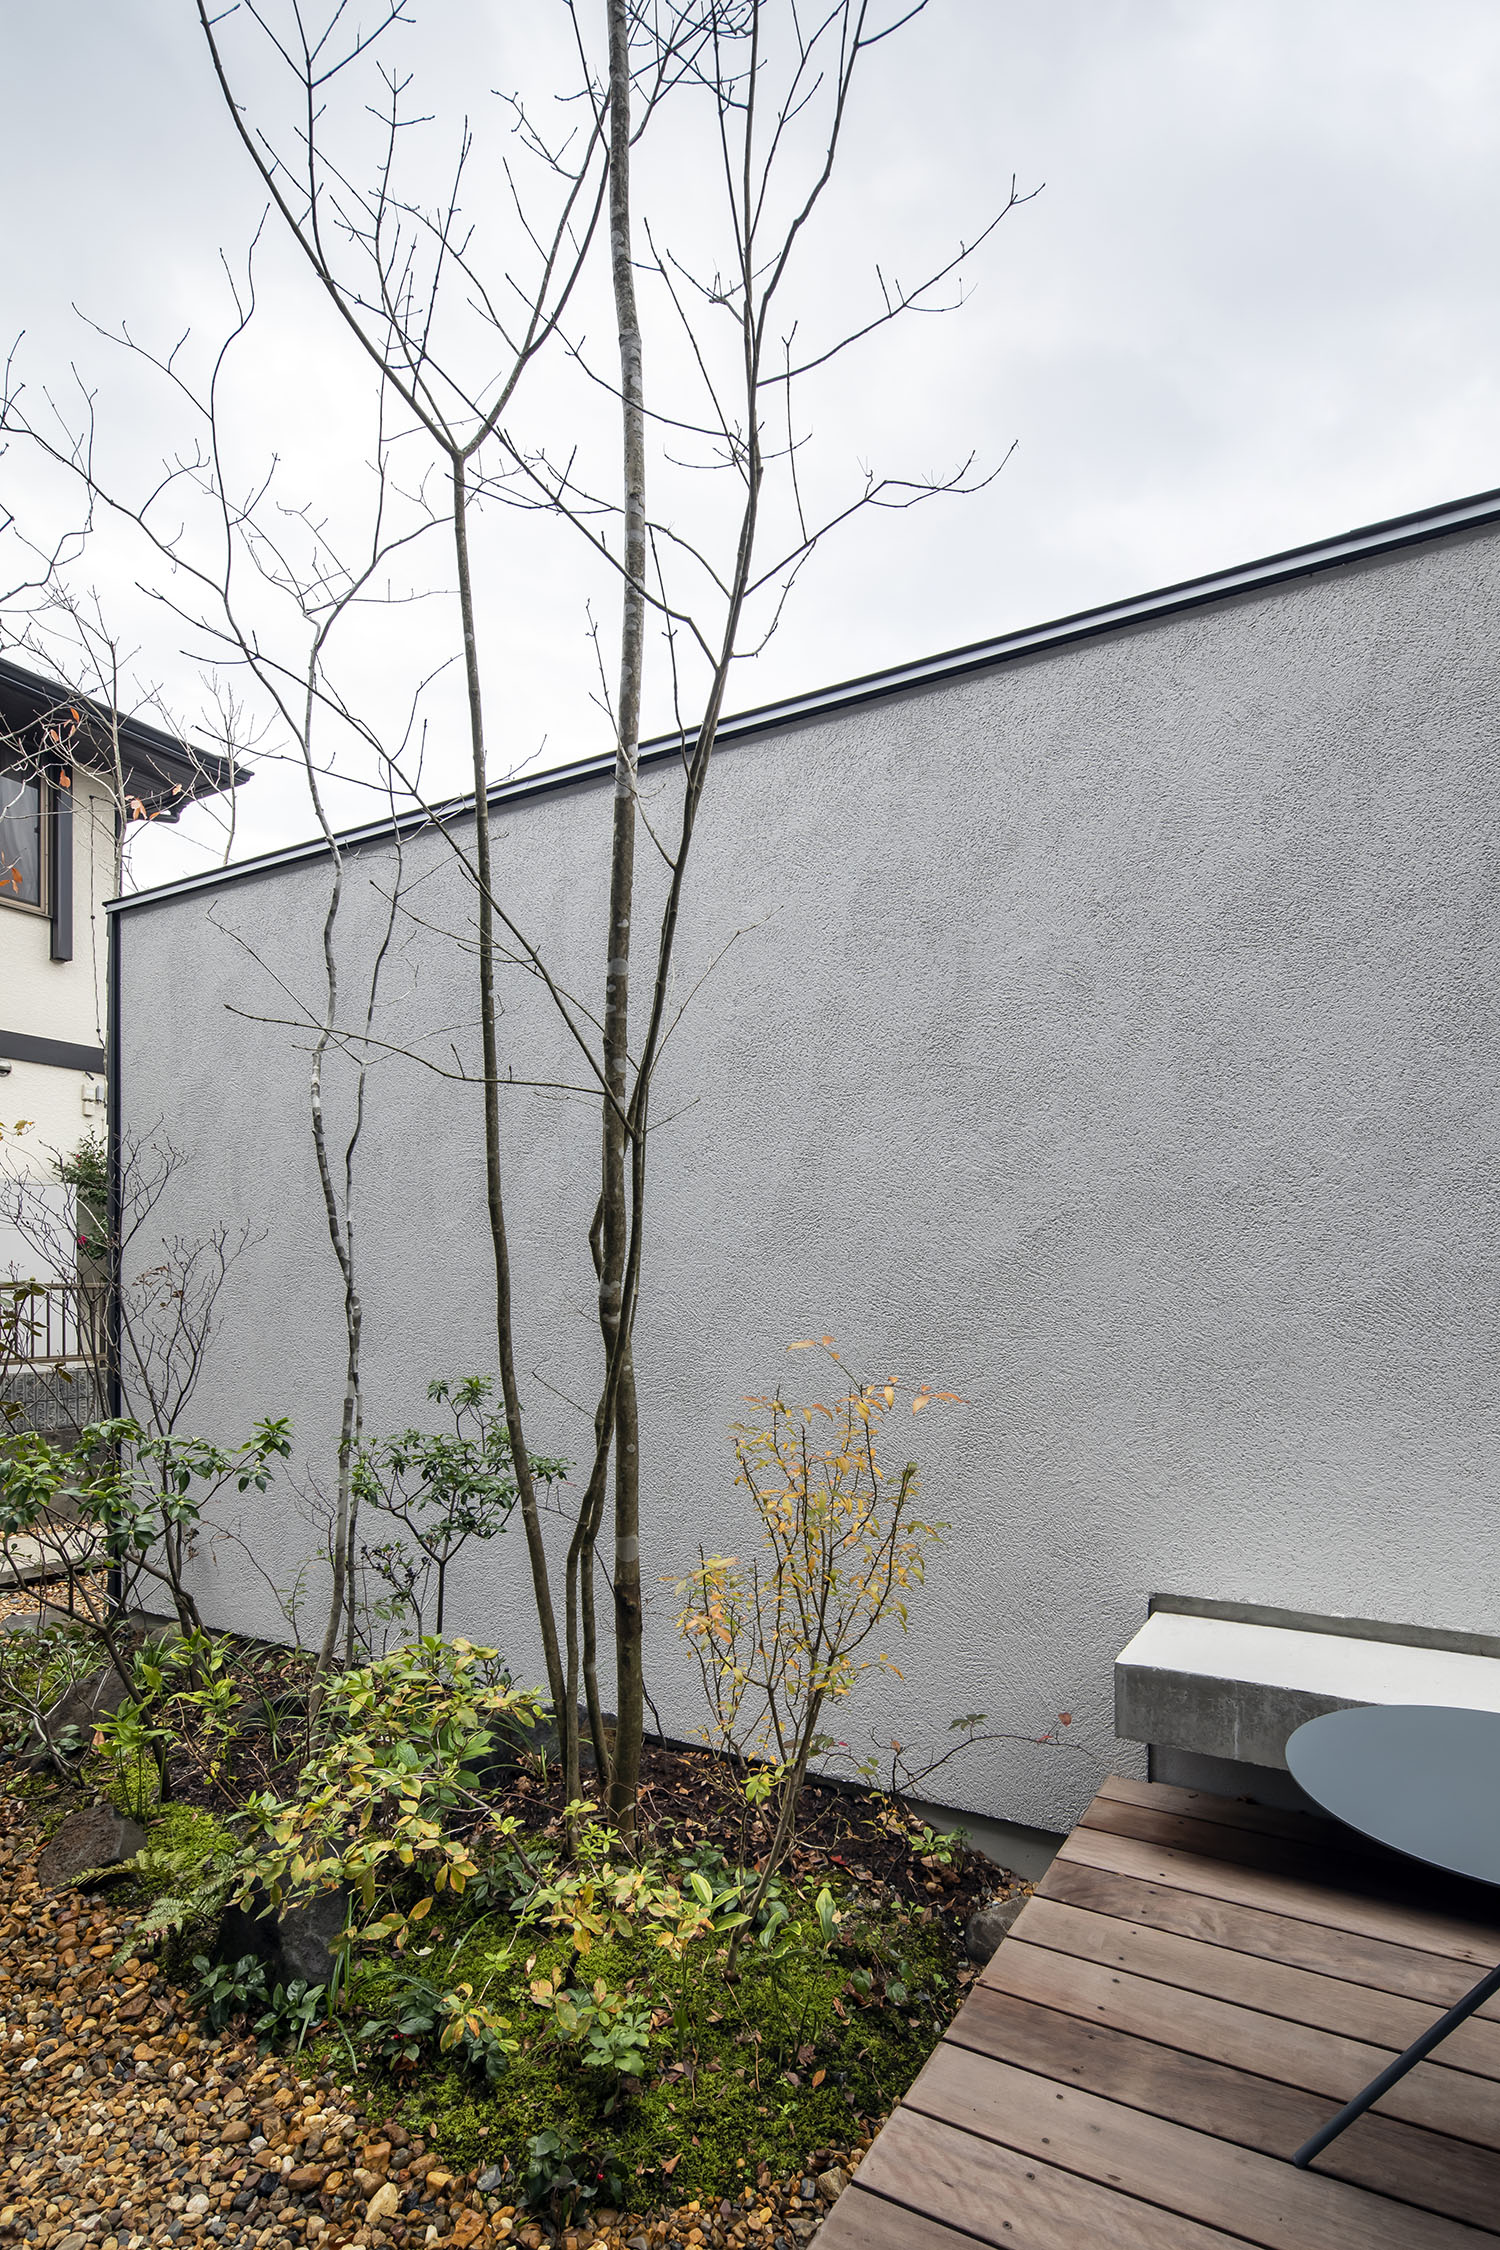 目隠しの白い壁が建てられた、植栽のあるウッドデッキのテラス・デザイン住宅